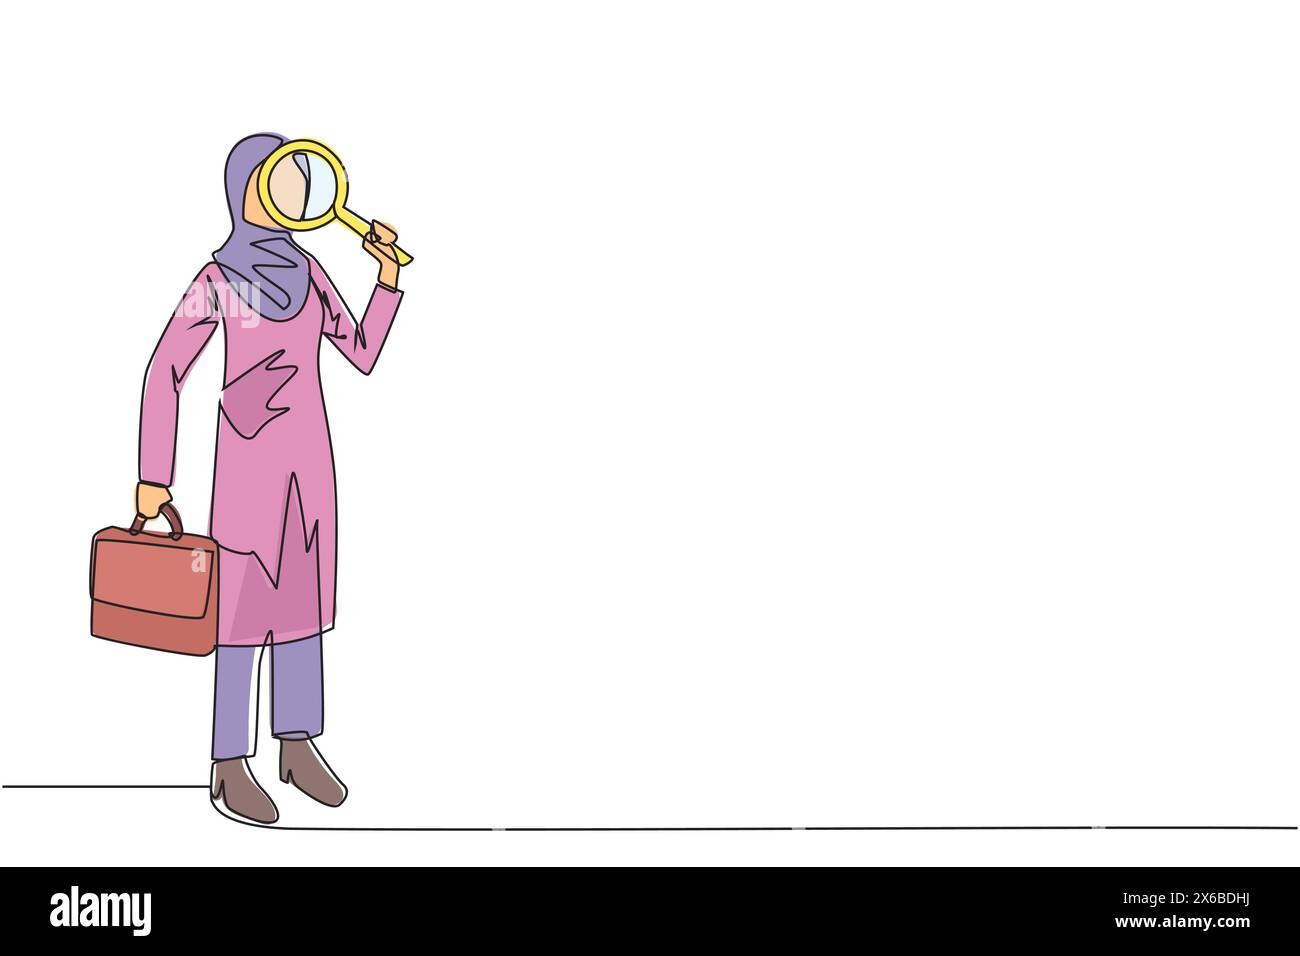 Une seule ligne continue dessinant une femme d'affaires arabe se tenait debout tenant une loupe et l'autre tenant une mallette. Recherchez les plus petites opportunités possibles Illustration de Vecteur